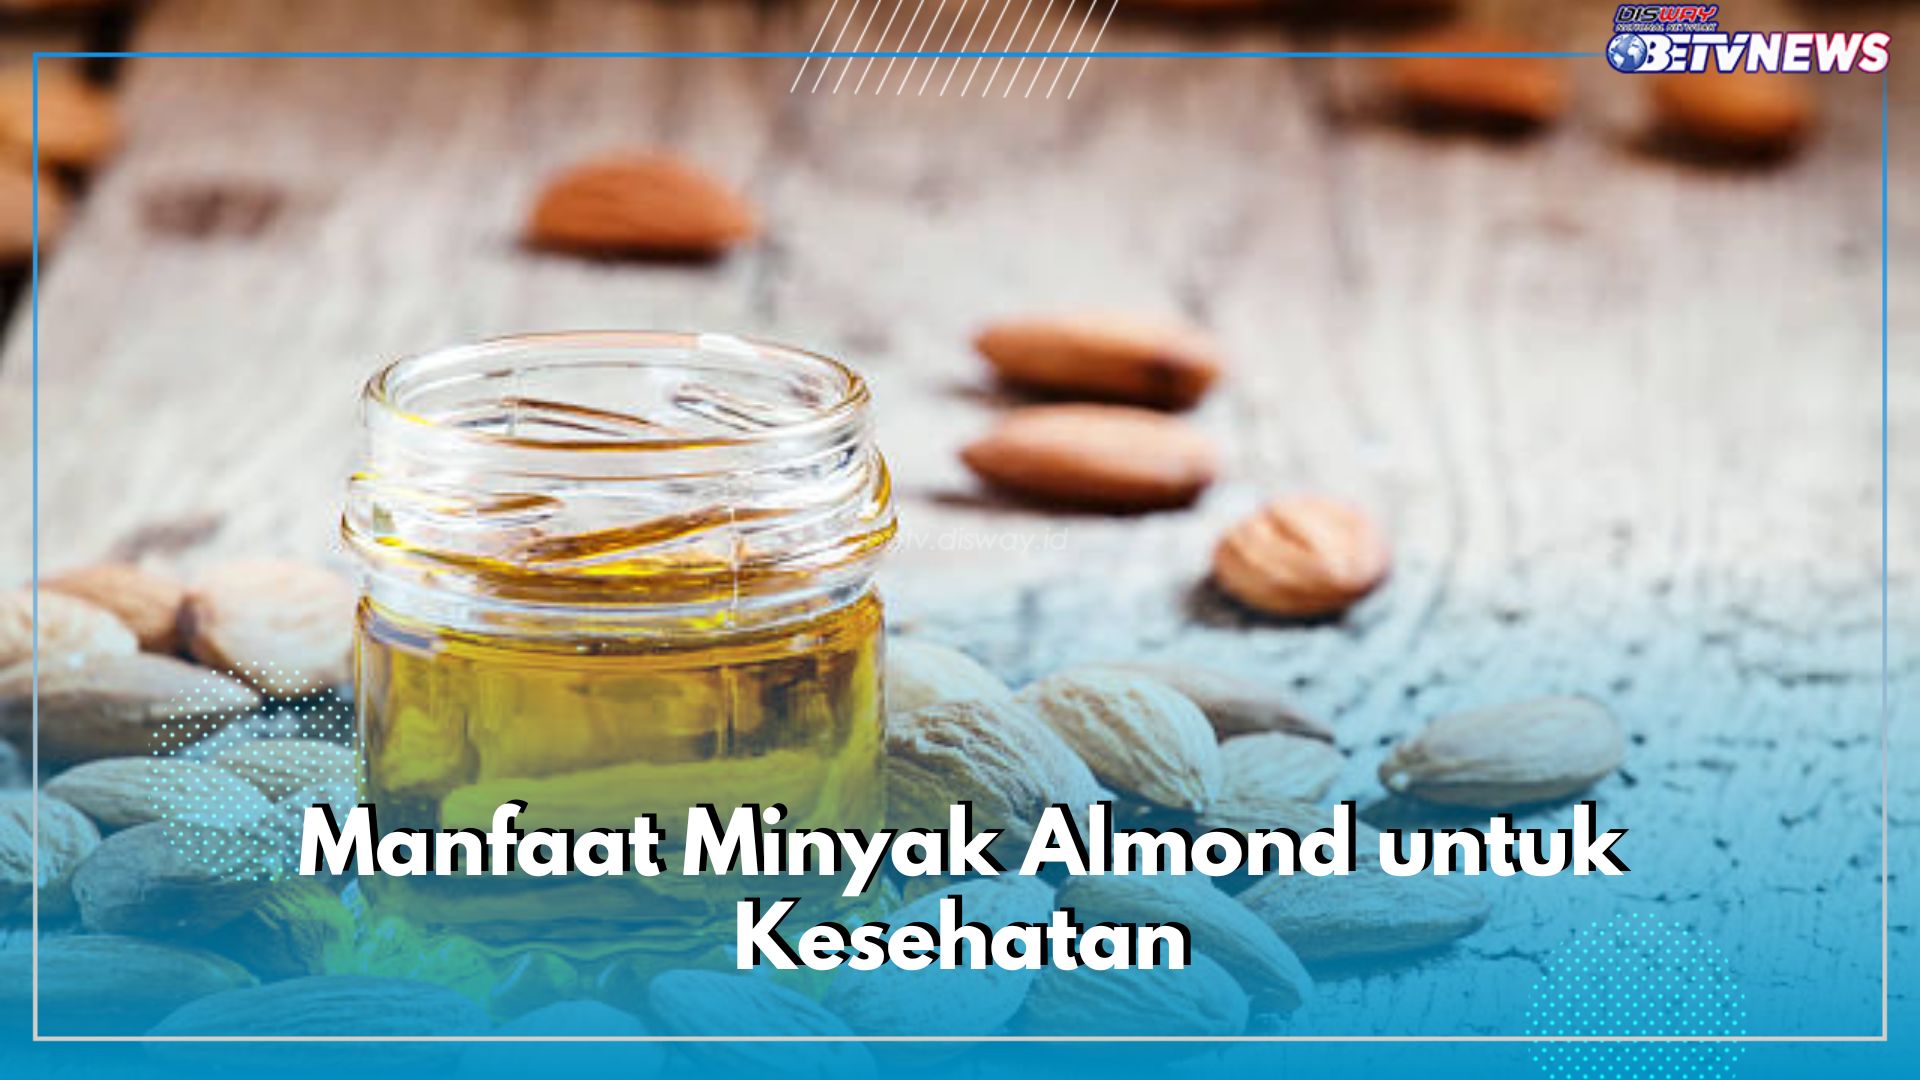 5 Manfaat Minyak Almond untuk Kesehatan, Baik untuk Jantung hingga Ampuh Atasi Stretchmark